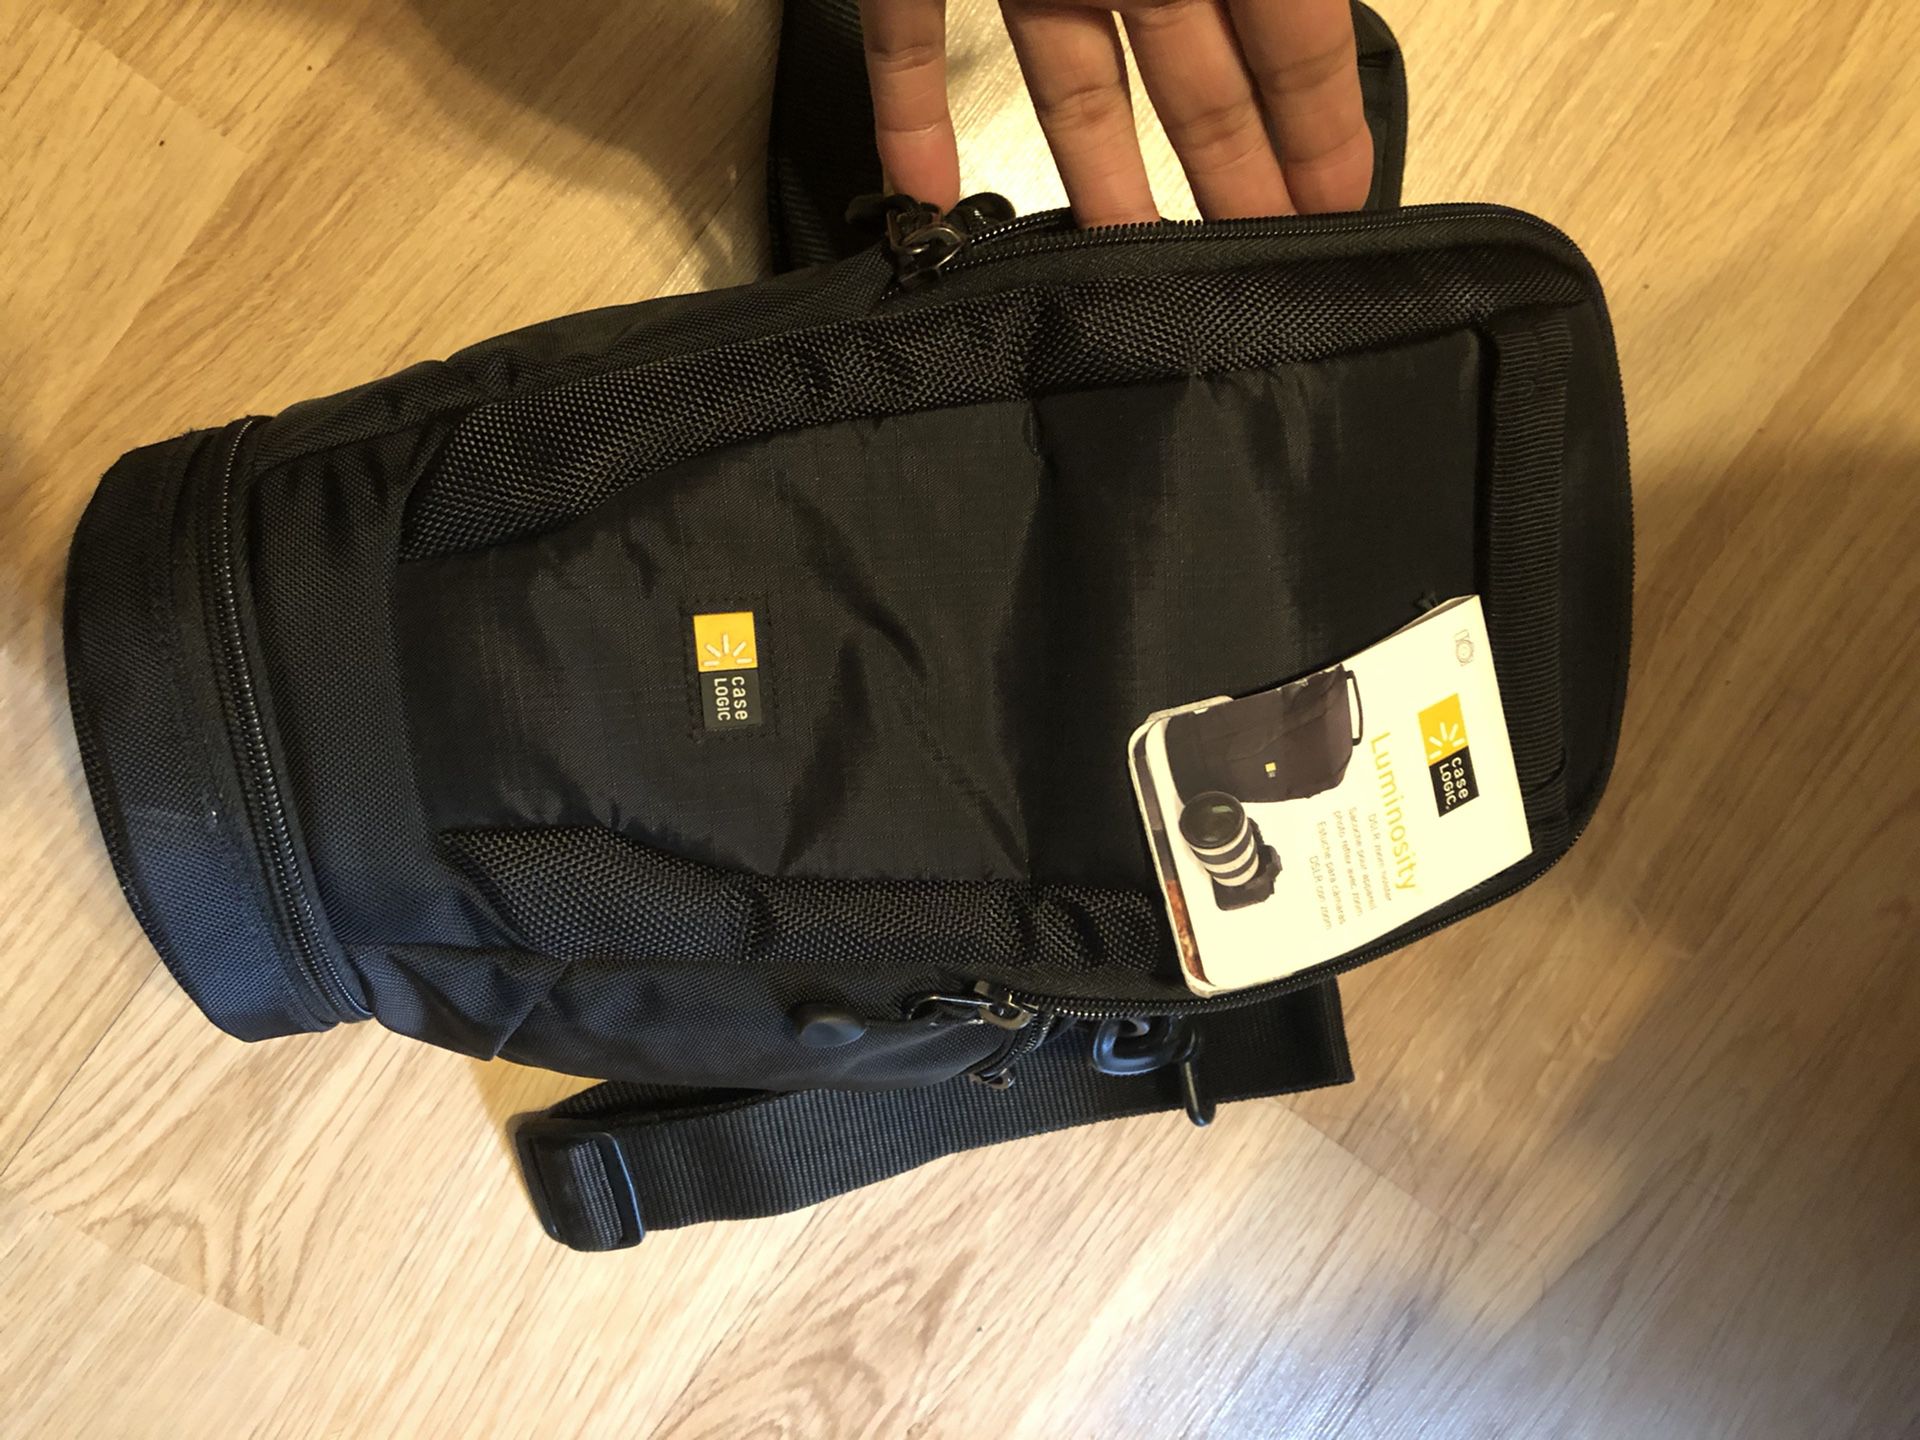 Camera bag for DSLR -Case Logic